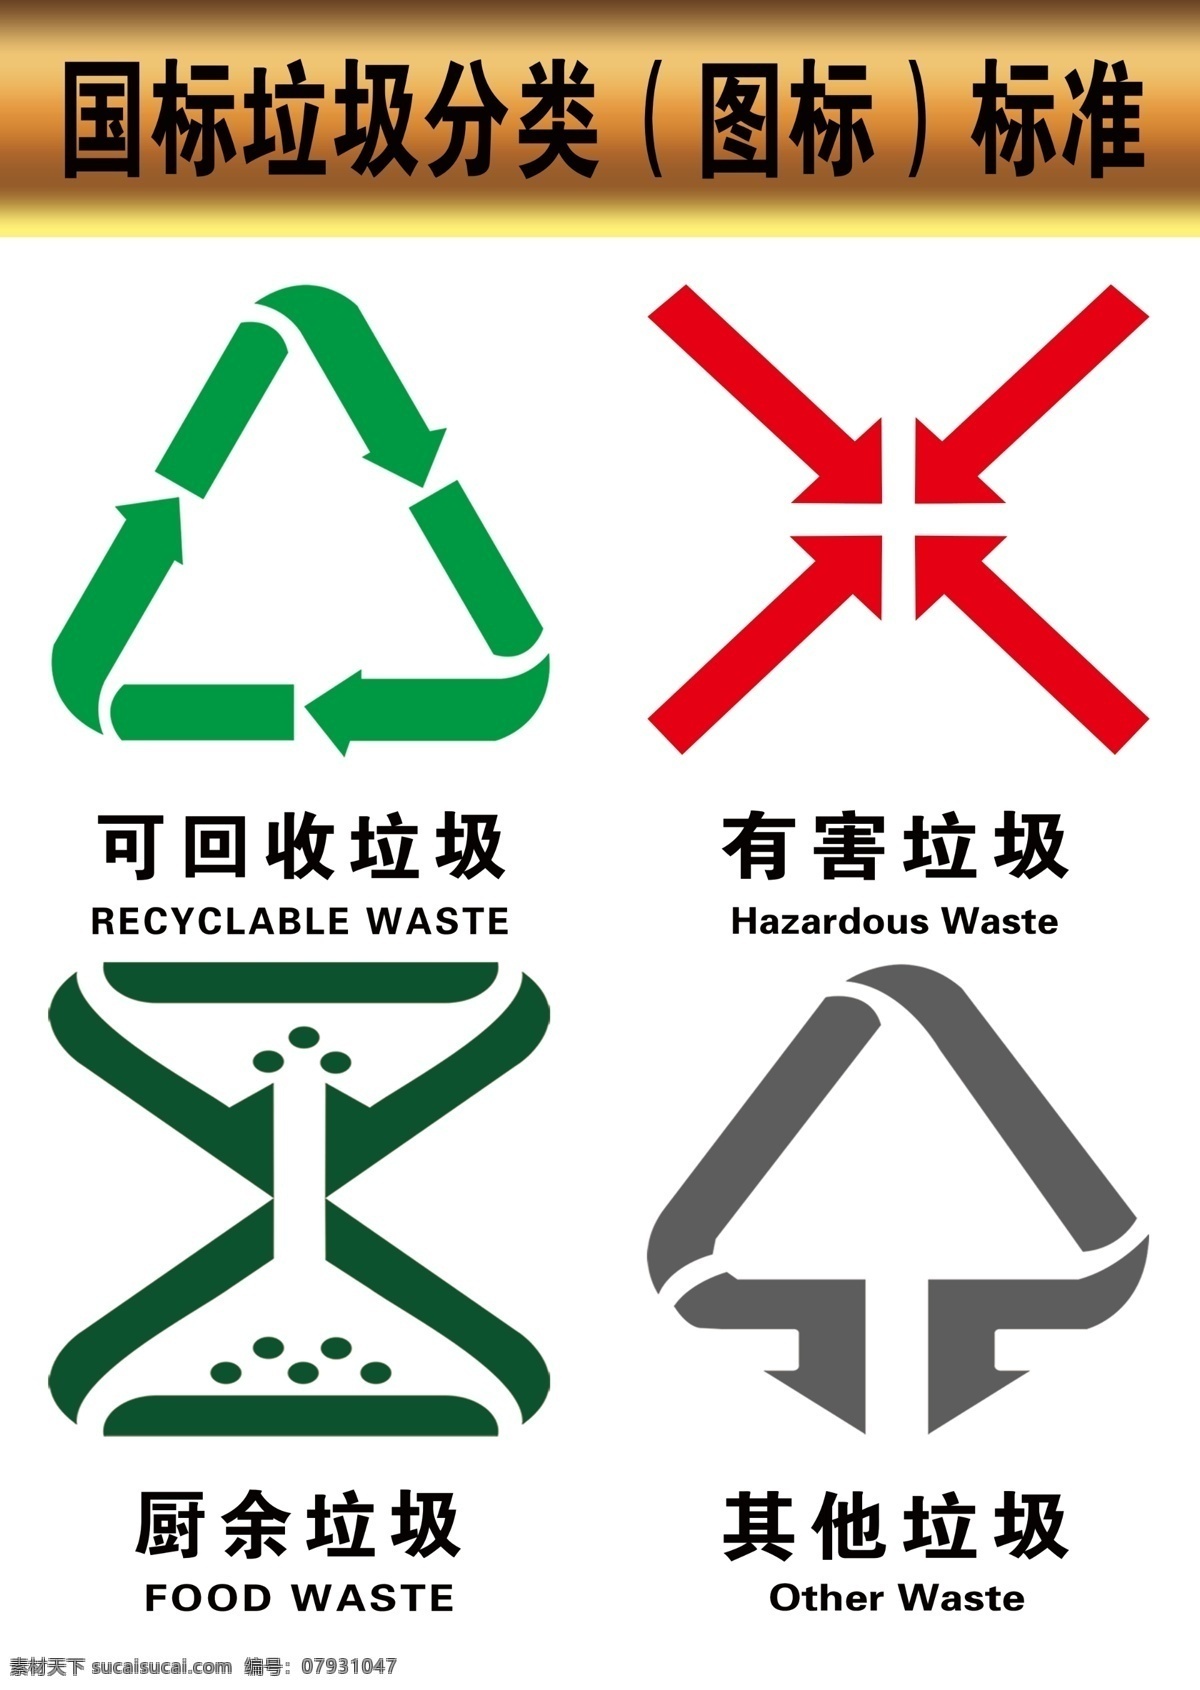 国标 垃圾 分类 标准 图标 logo 垃圾分类标准 公共标识 psd分层 高清 标志图标 公共标识标志